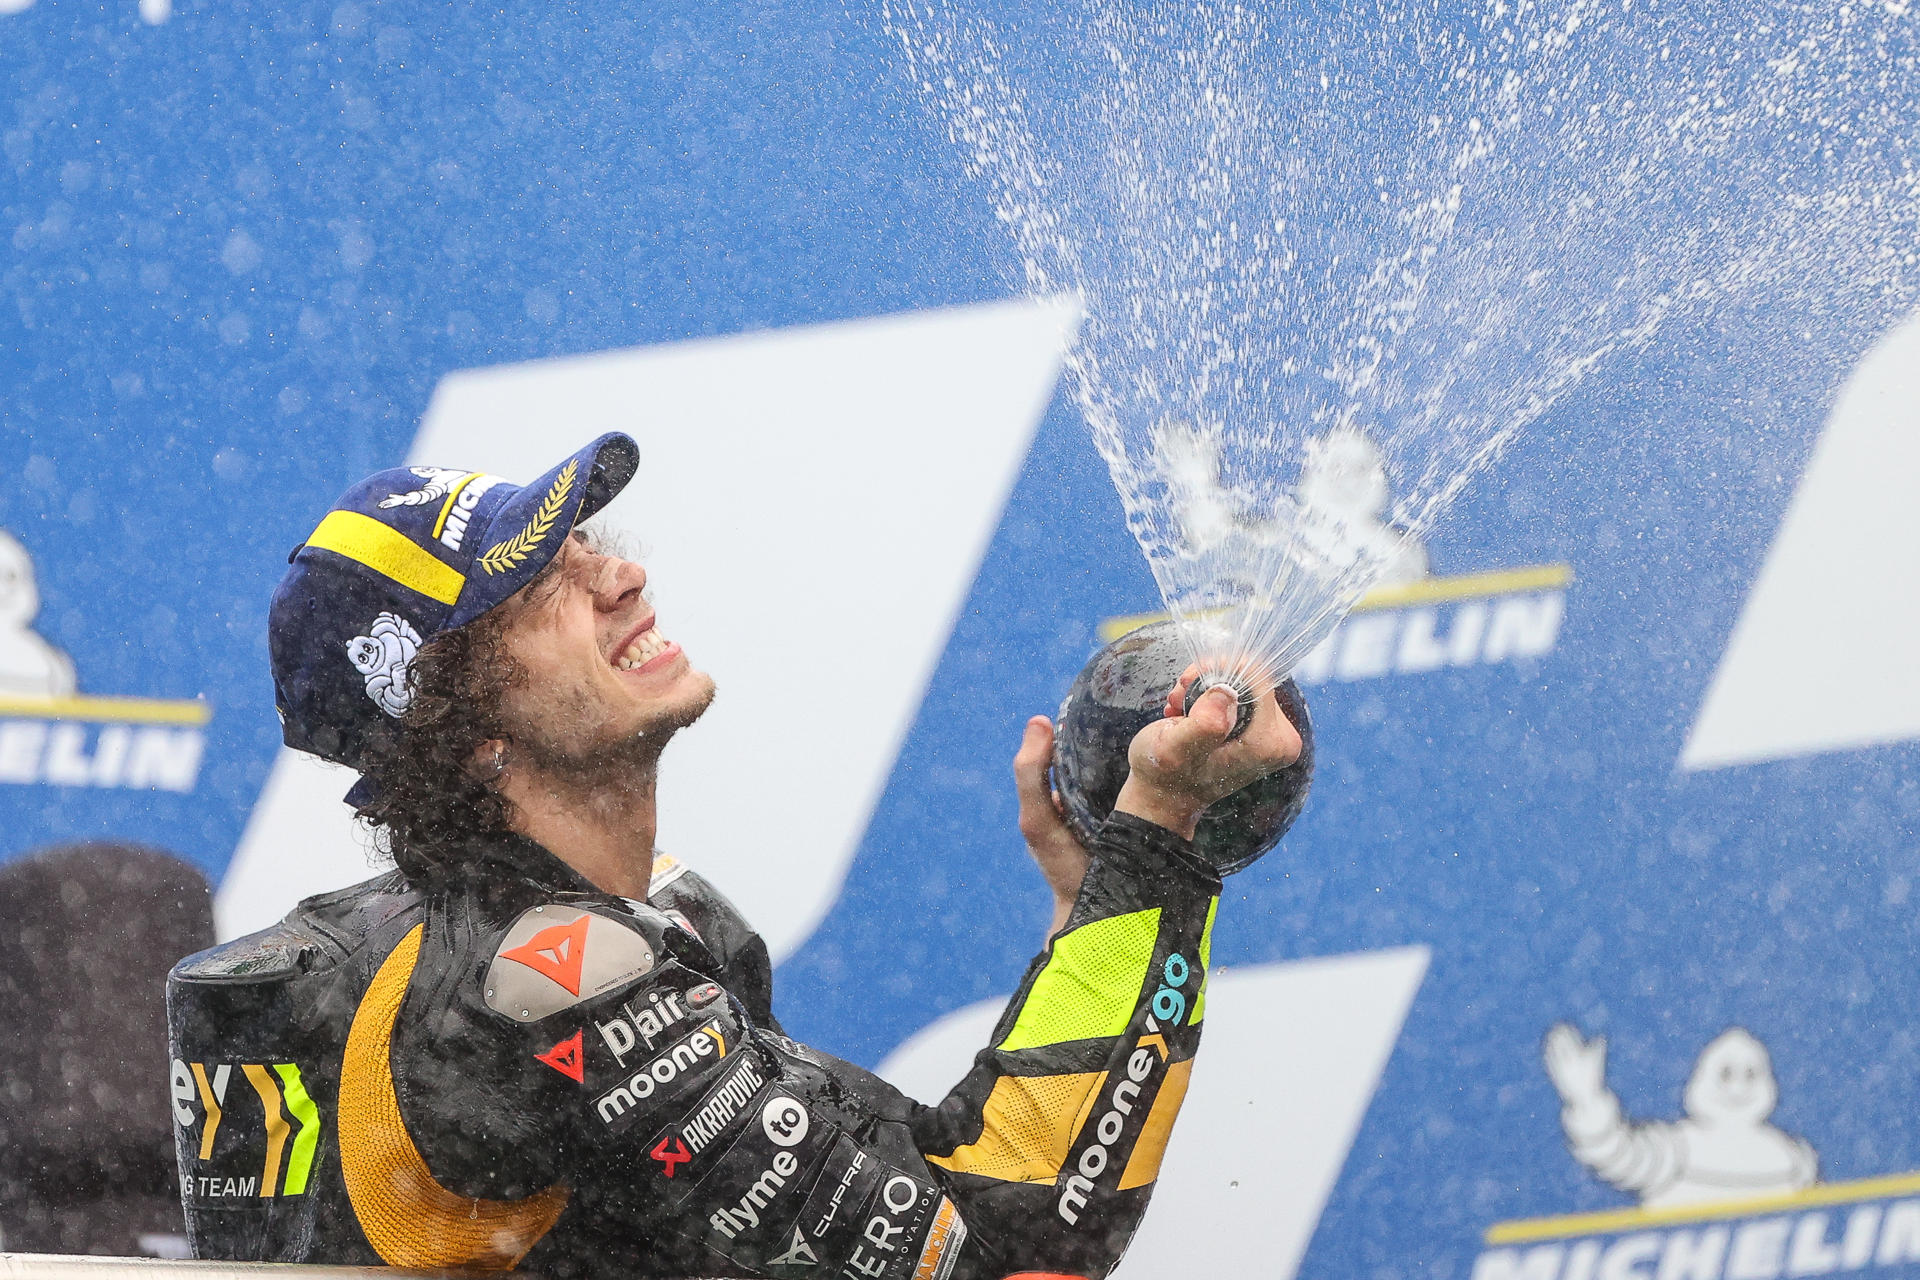 El italiano Marco Bezzecchi de Mooney VR46 Racing celebra al ganar el Gran Premio de la República Argentina hoy, en el Circuito de Termas de Río Hondo (Argentina). EFE/Juan Ignacio Roncoroni